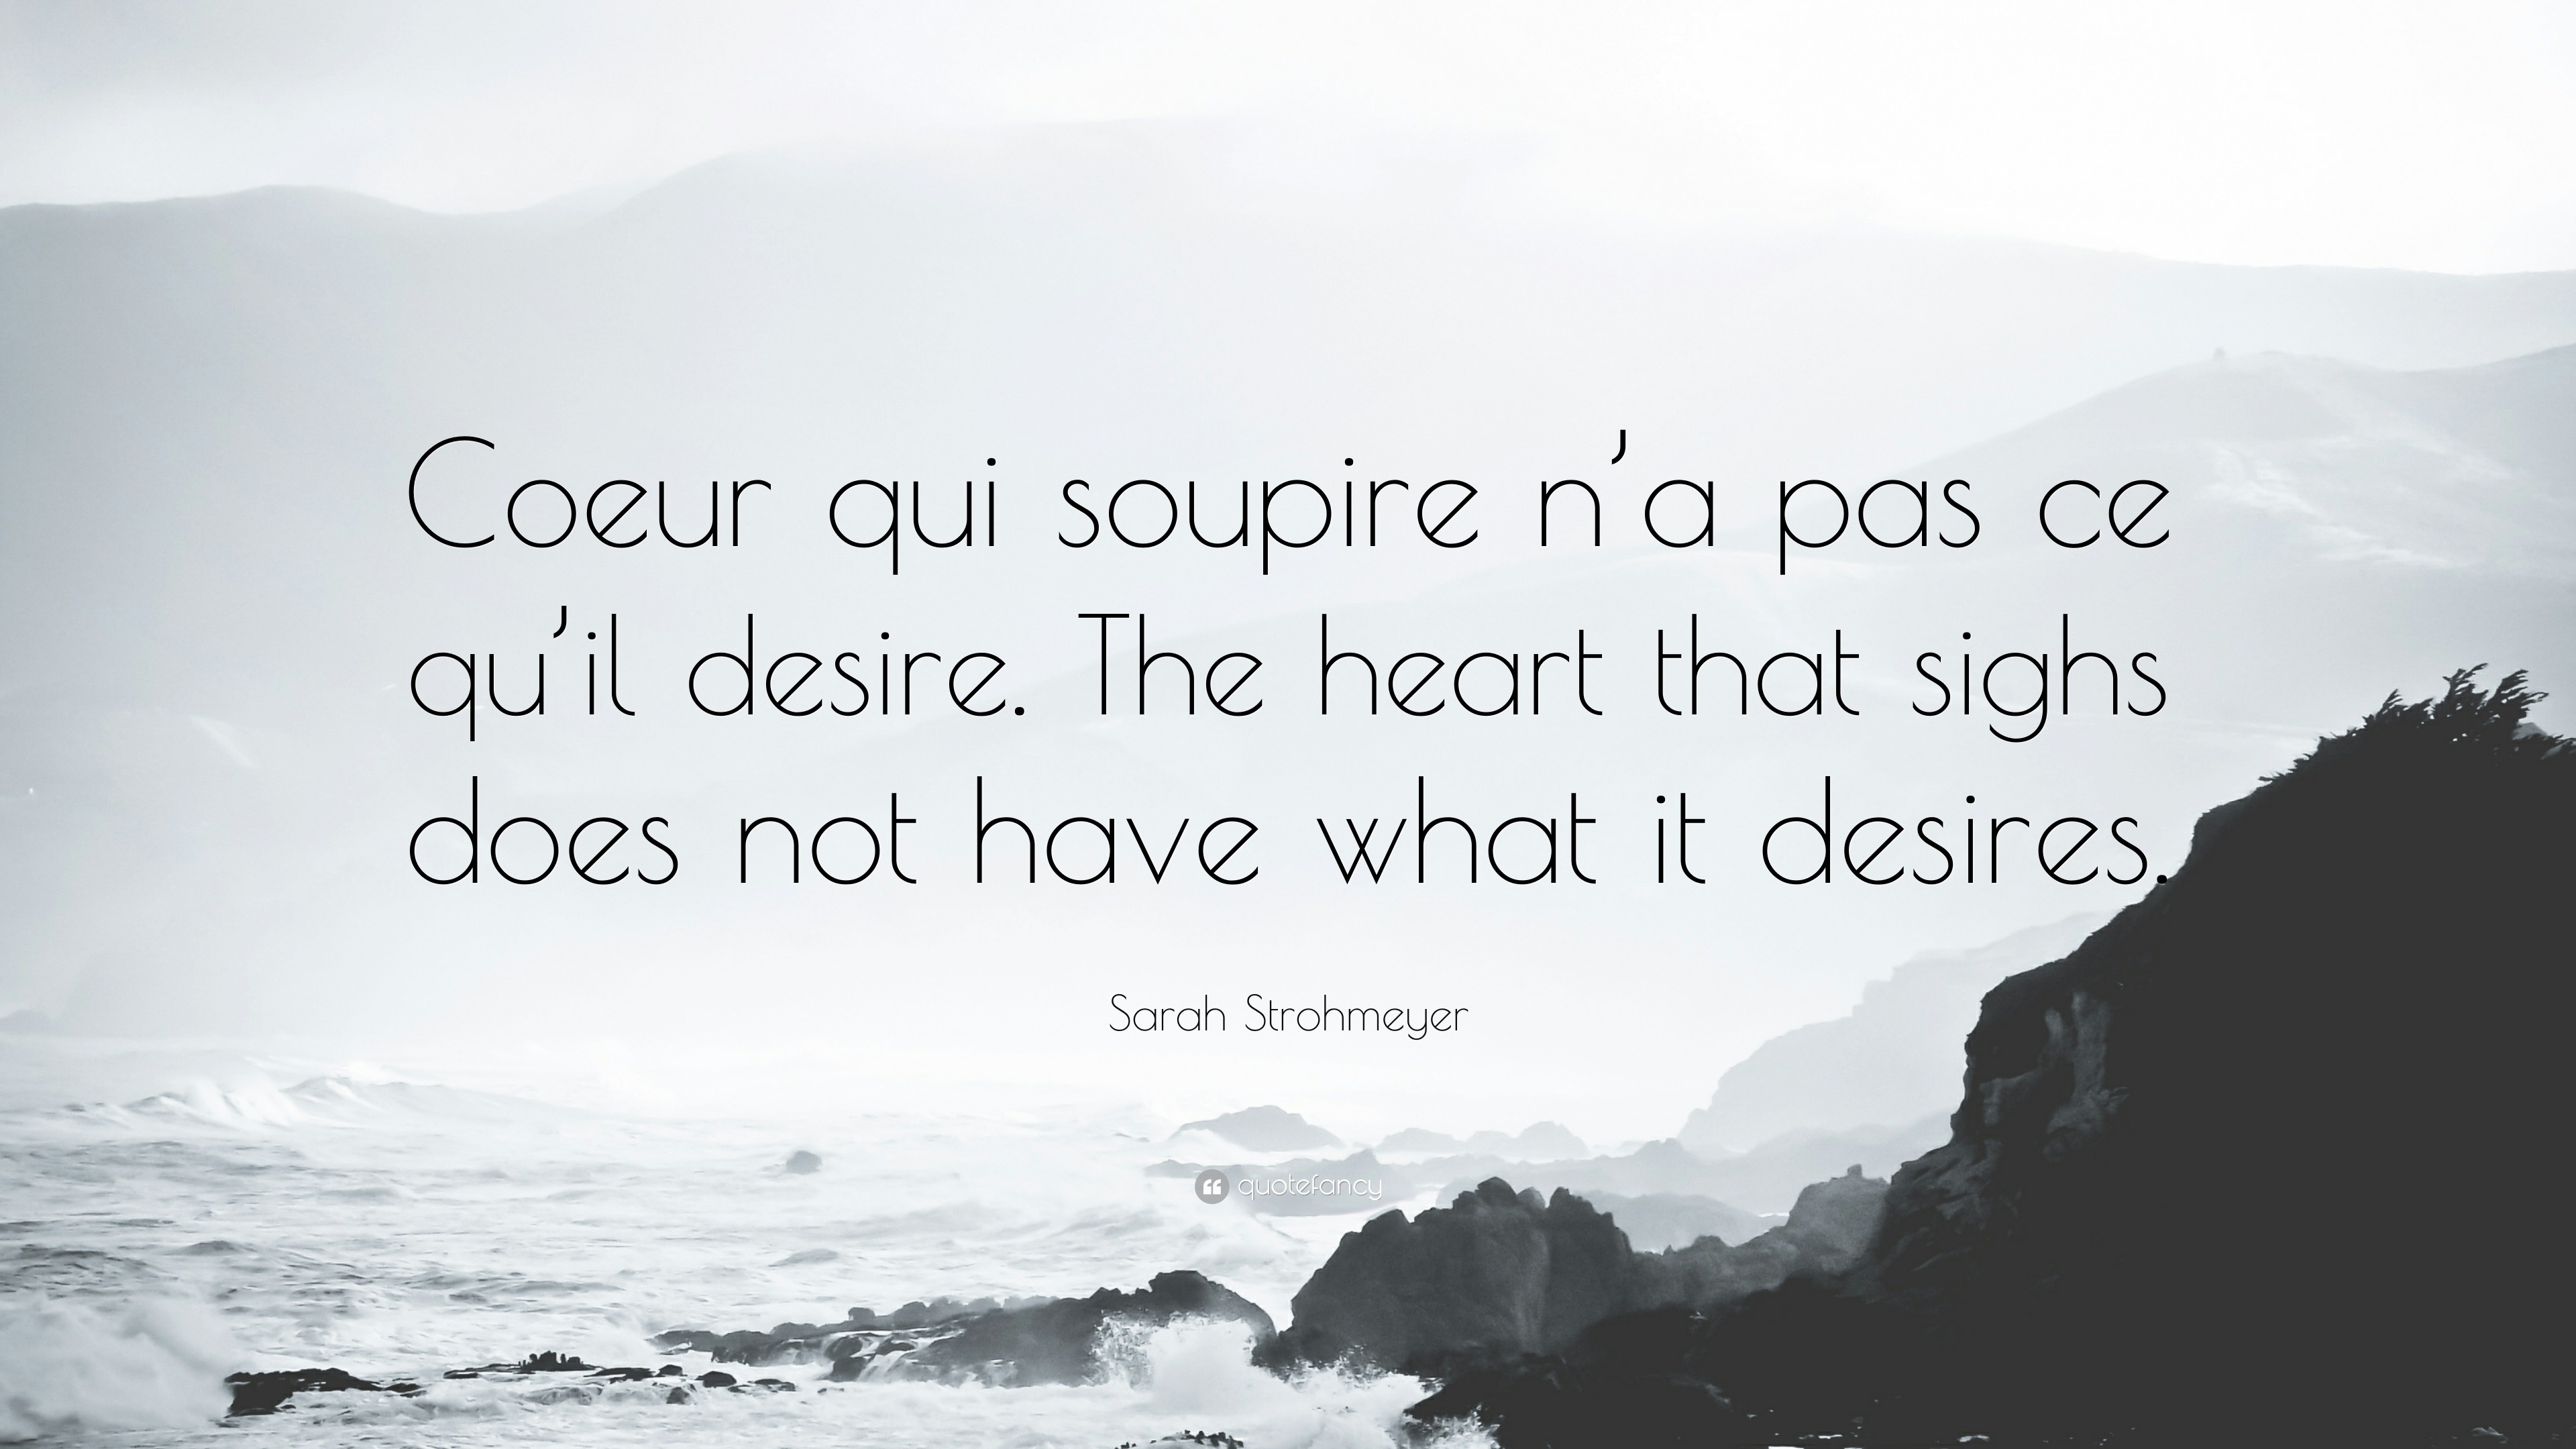 Sarah Strohmeyer Quote: “Coeur qui soupire n’a pas ce qu’il desire. The ...